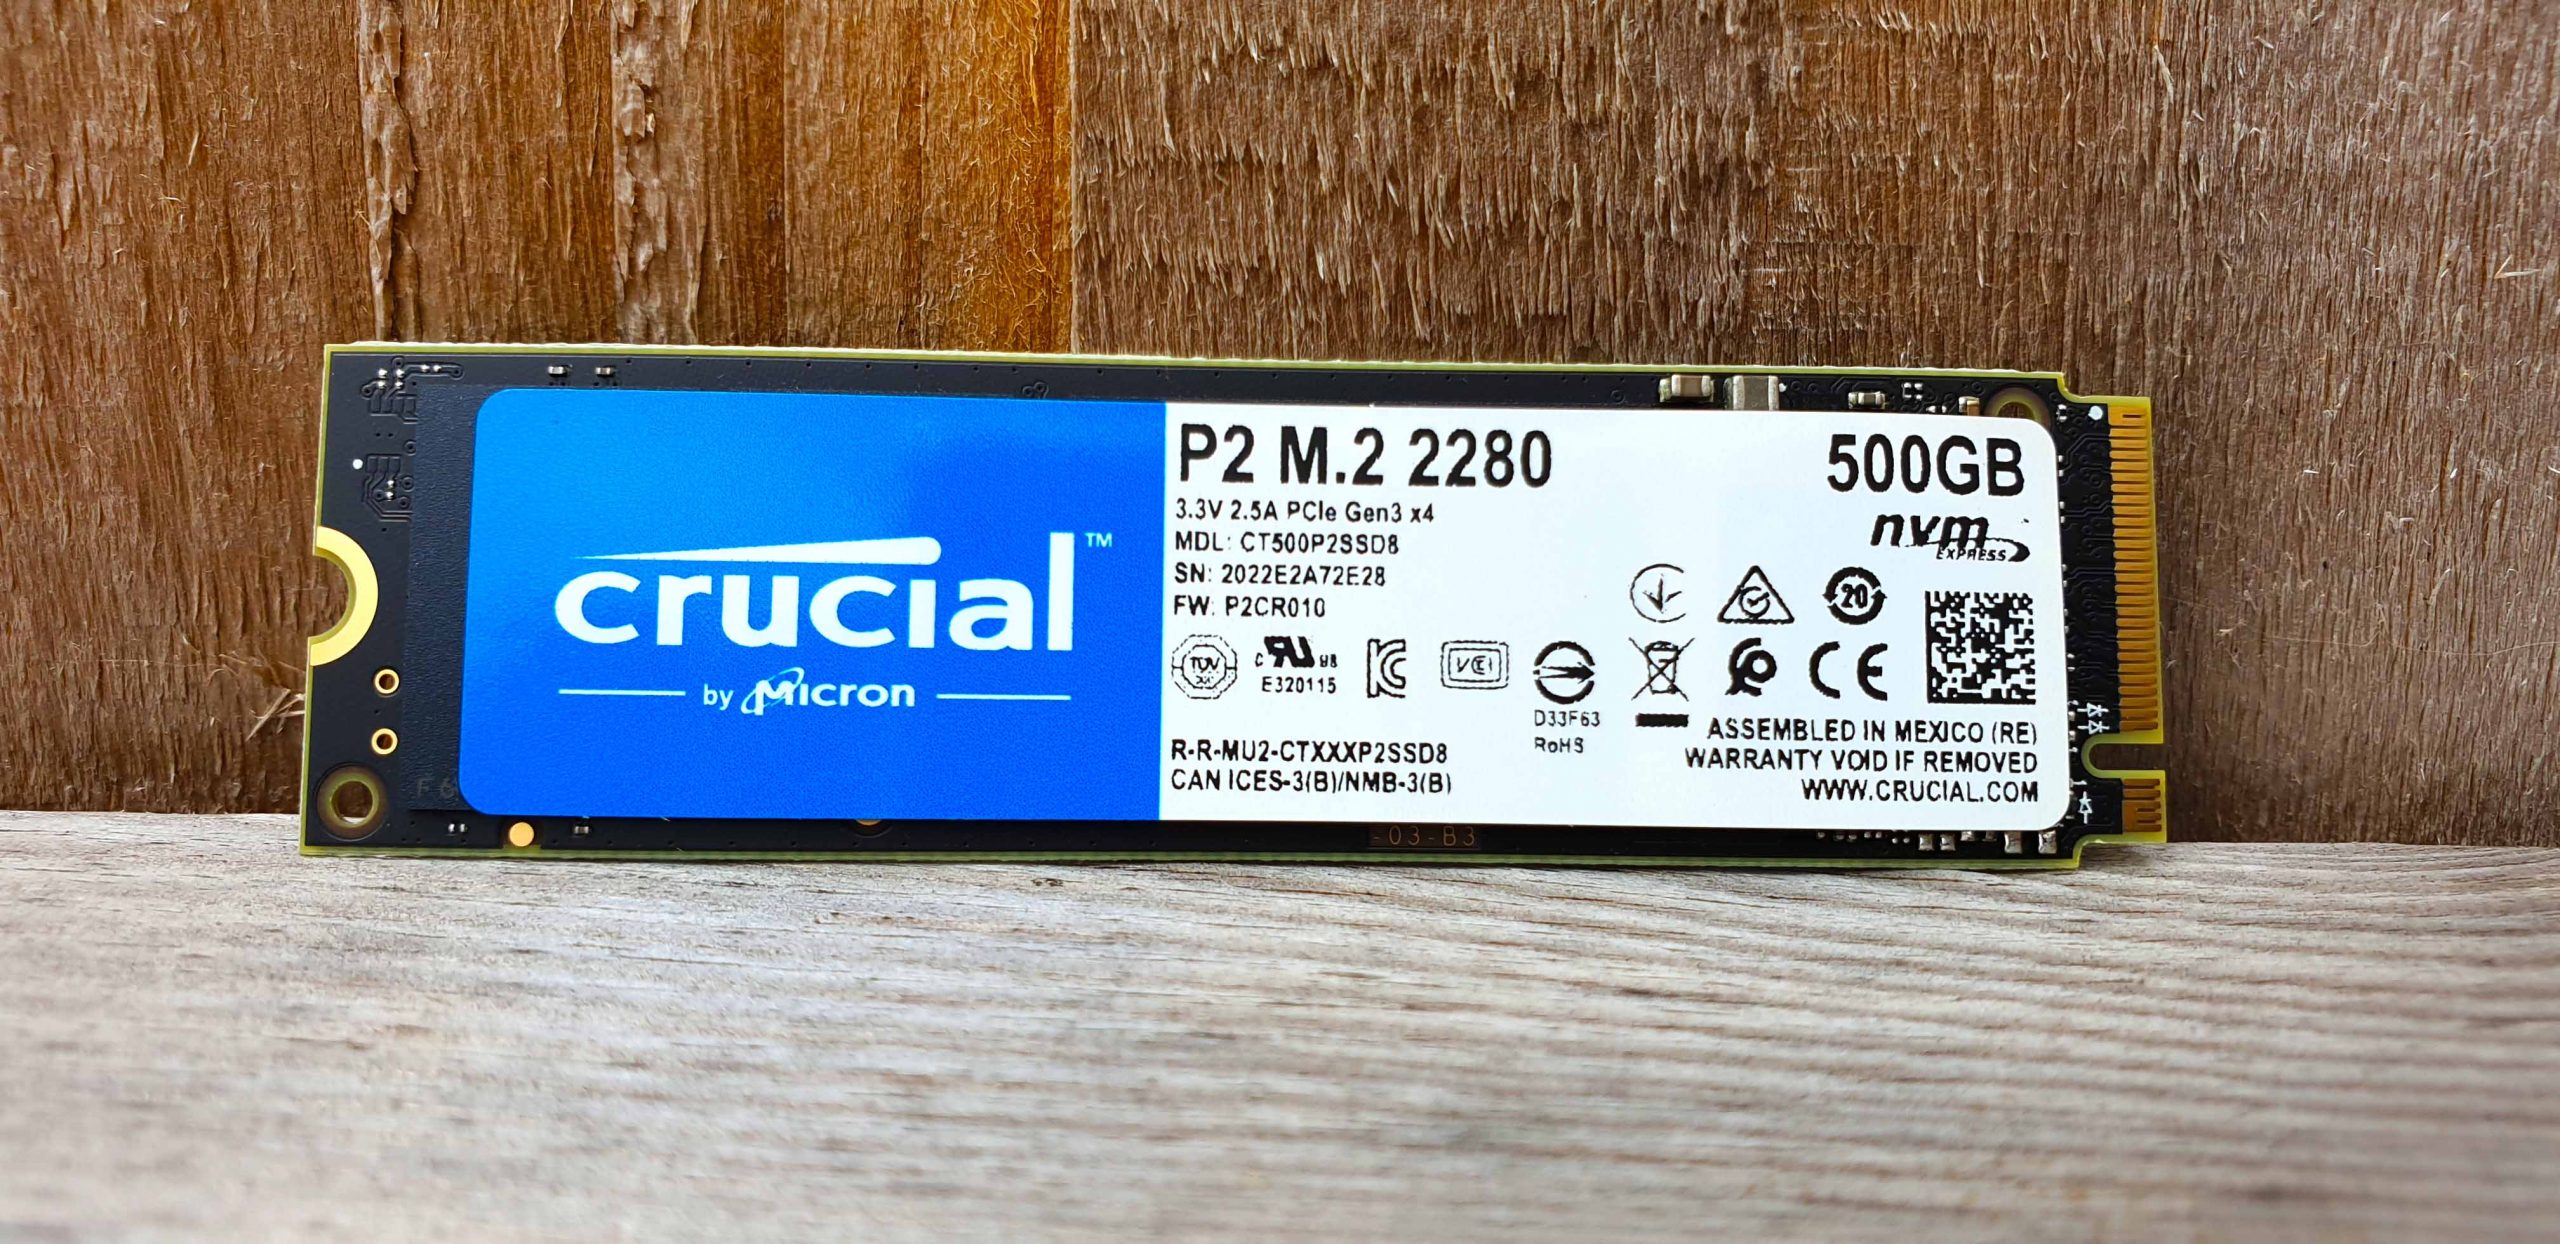 Crucial P2 500GB M.2